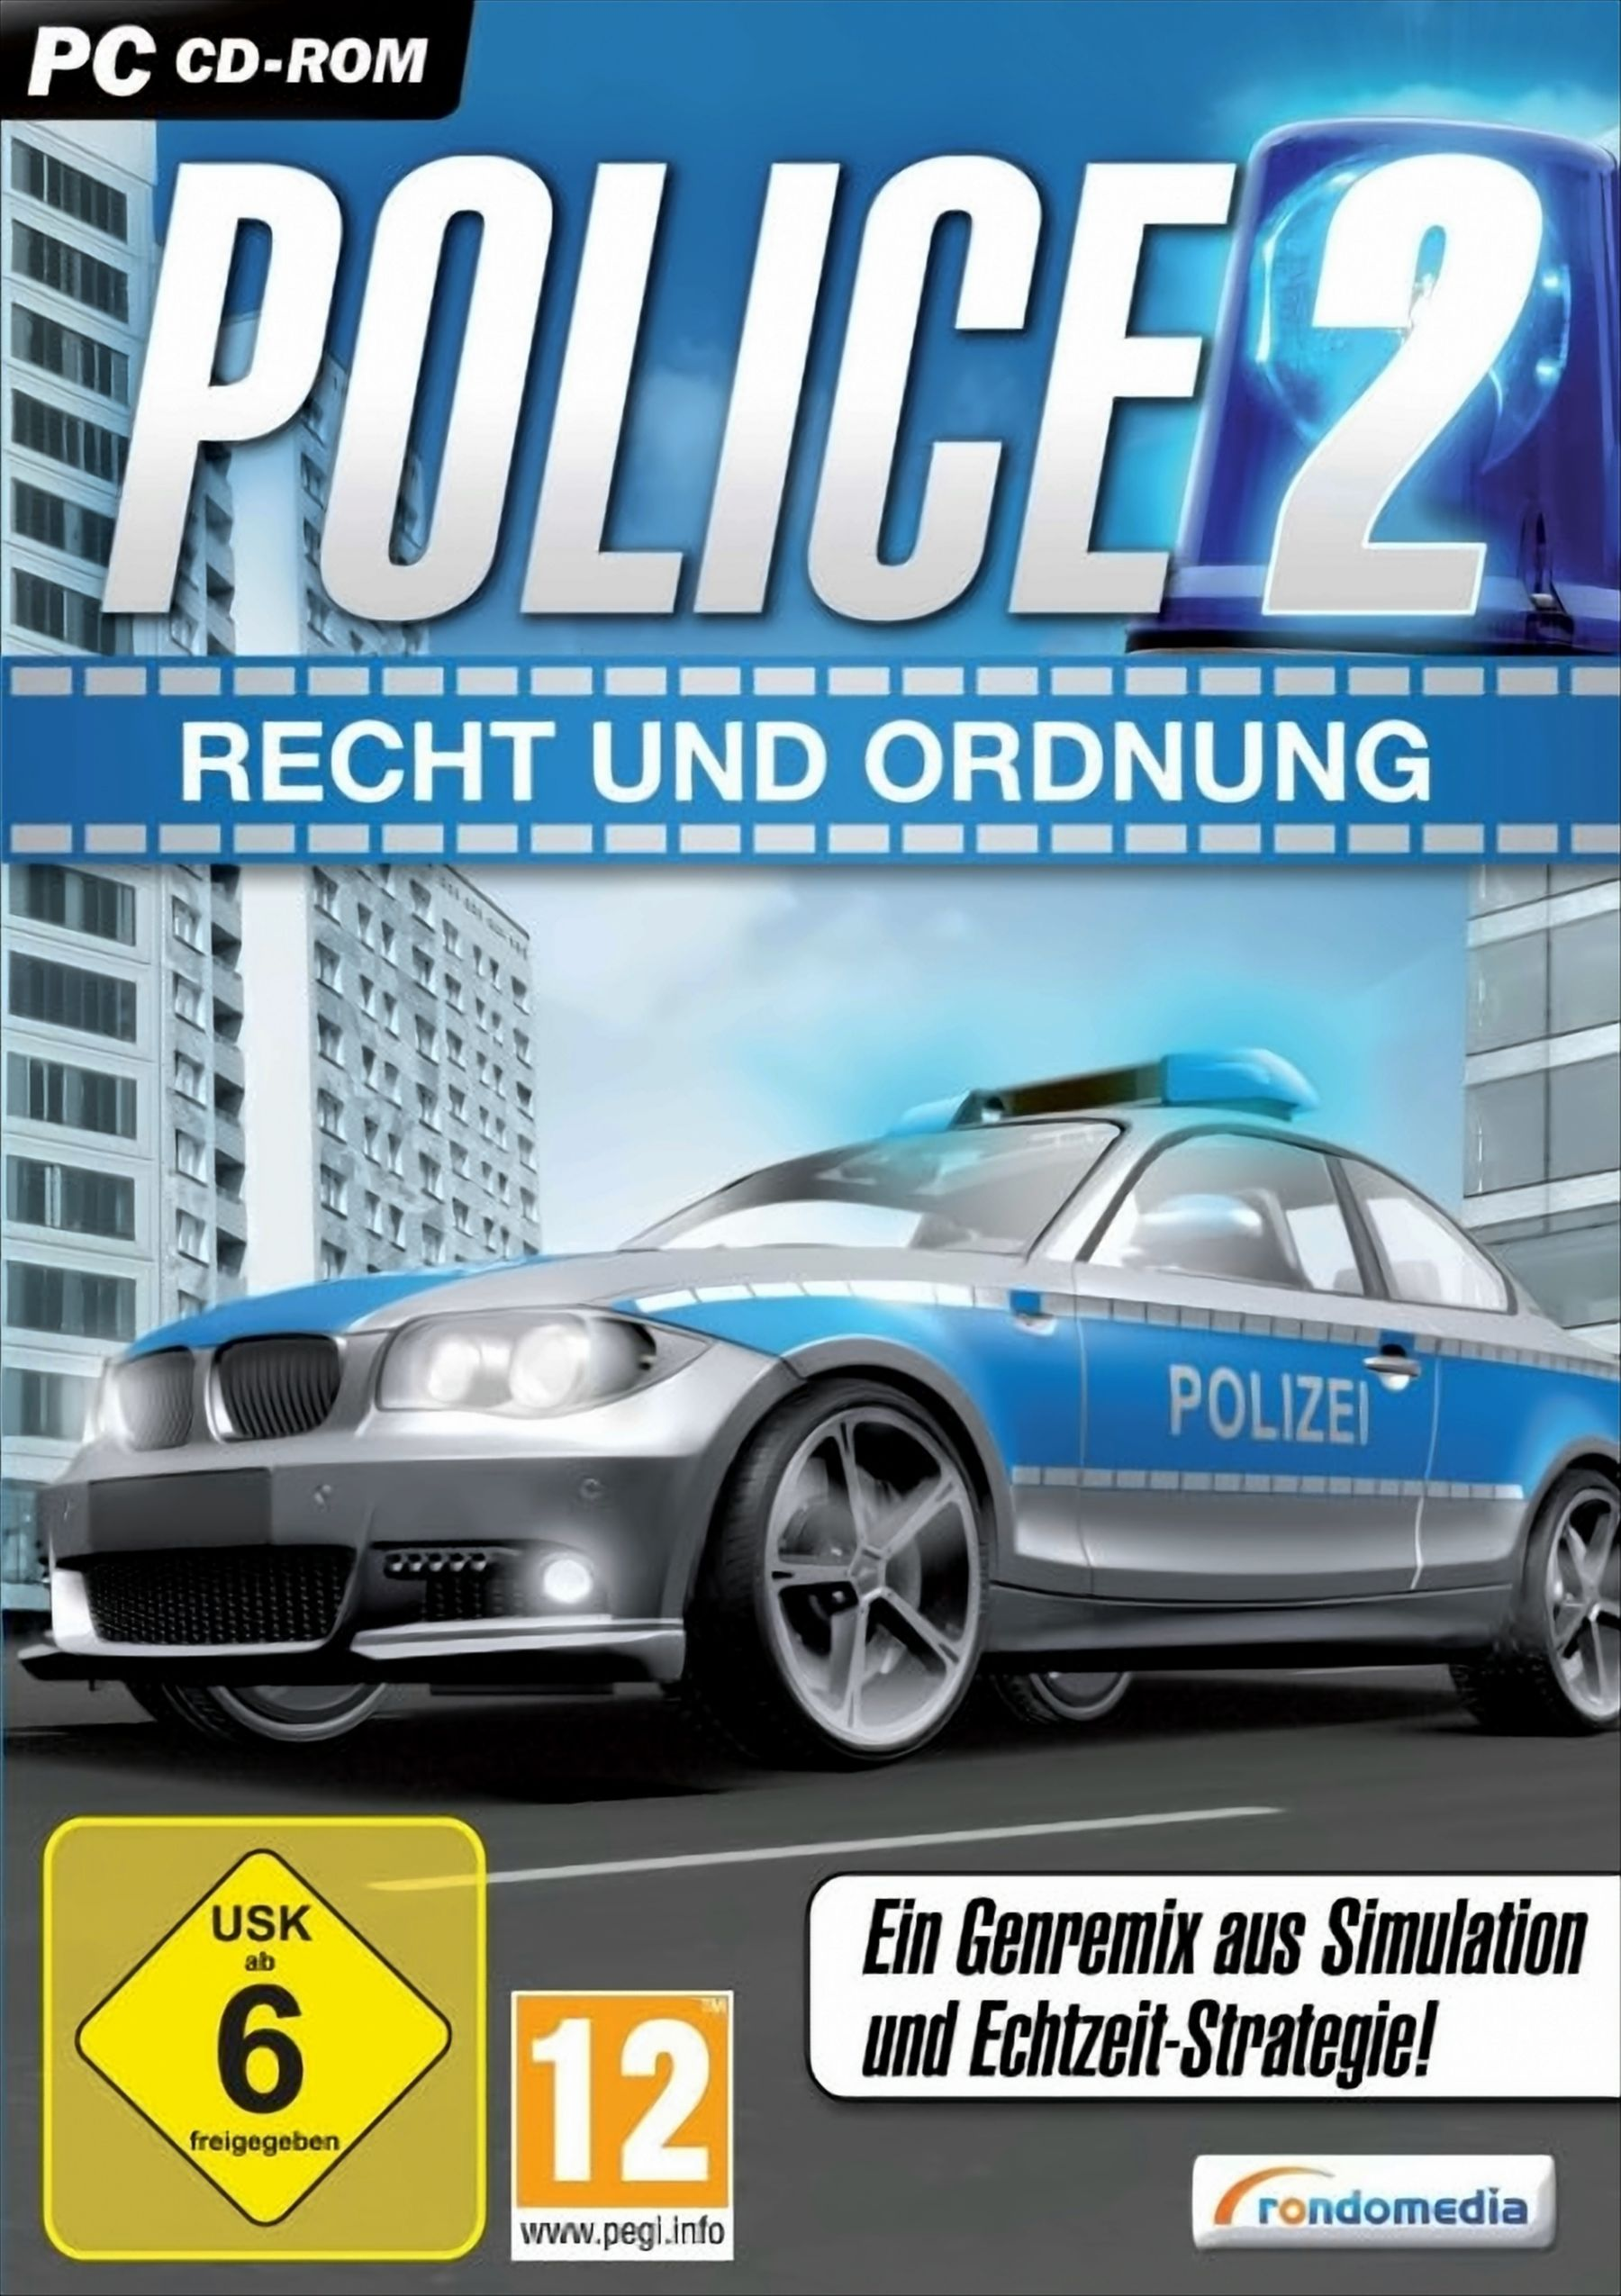 Police 2 - Ordnung und [PC] - Recht